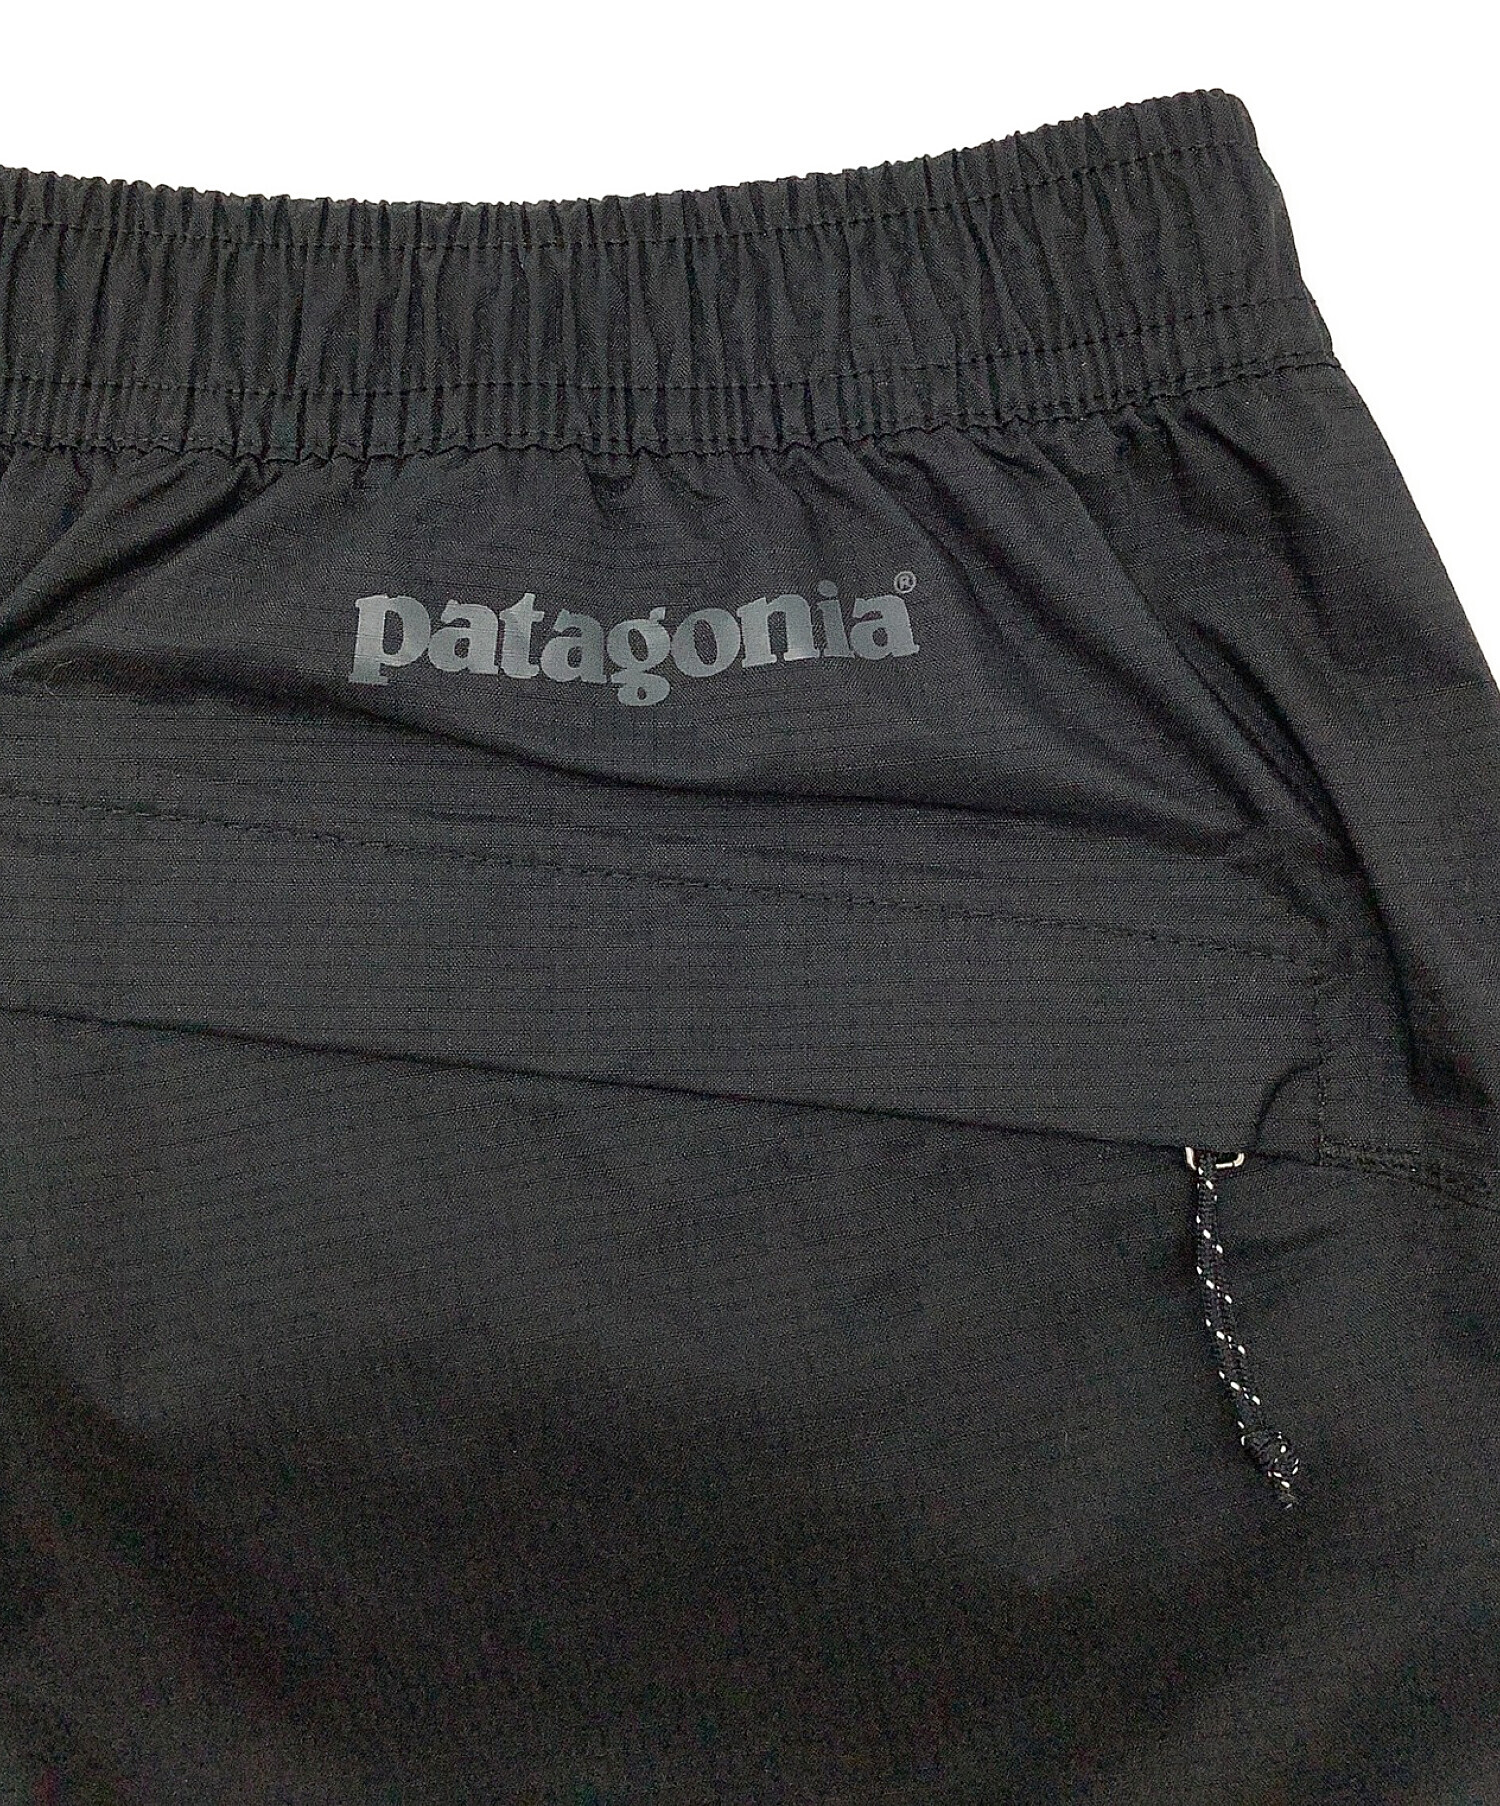 Patagonia (パタゴニア) トレントシェル パンツ ブラック サイズ:S